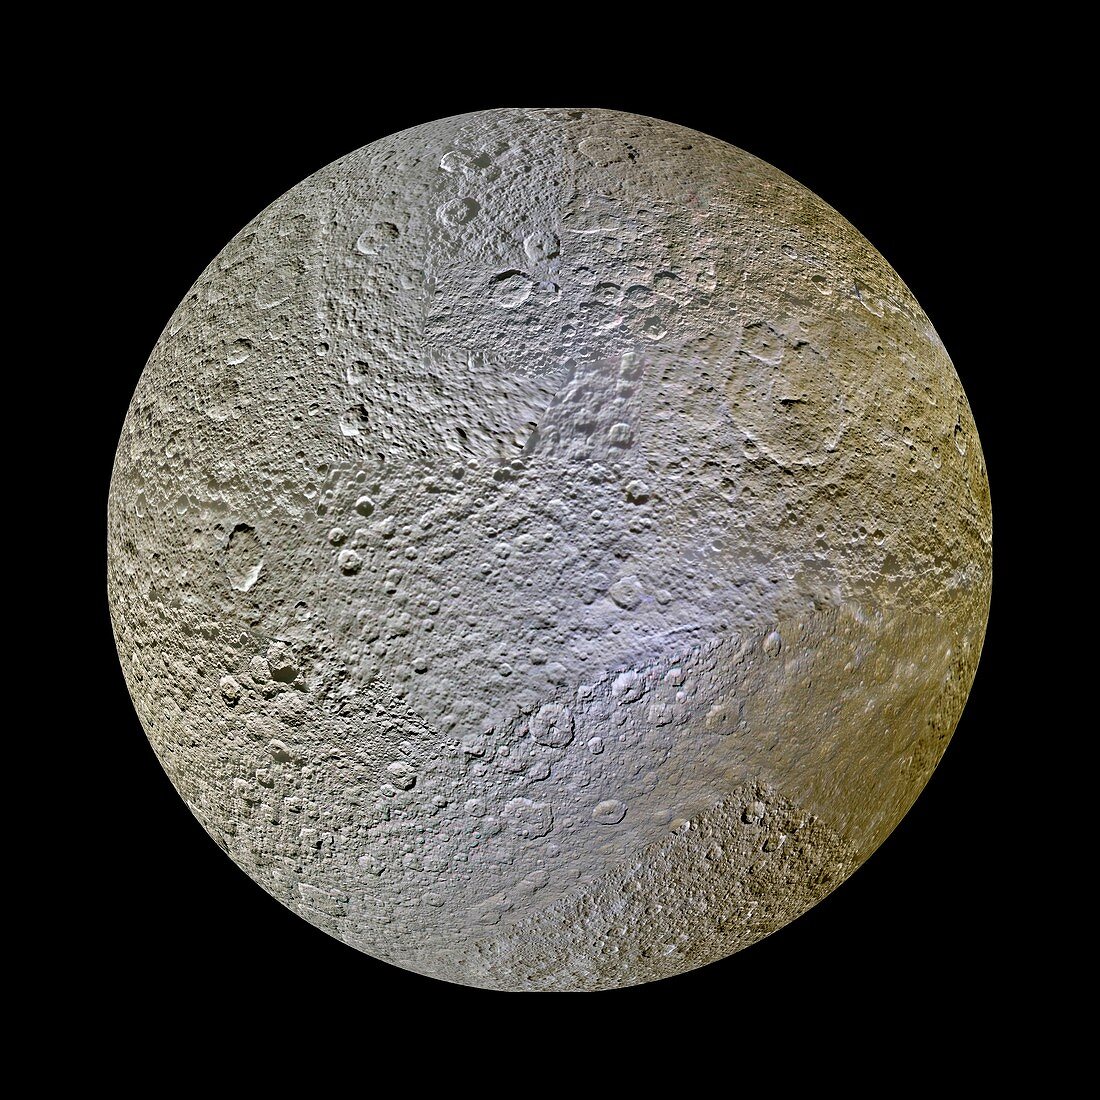 Saturn's moon Rhea, Cassini image